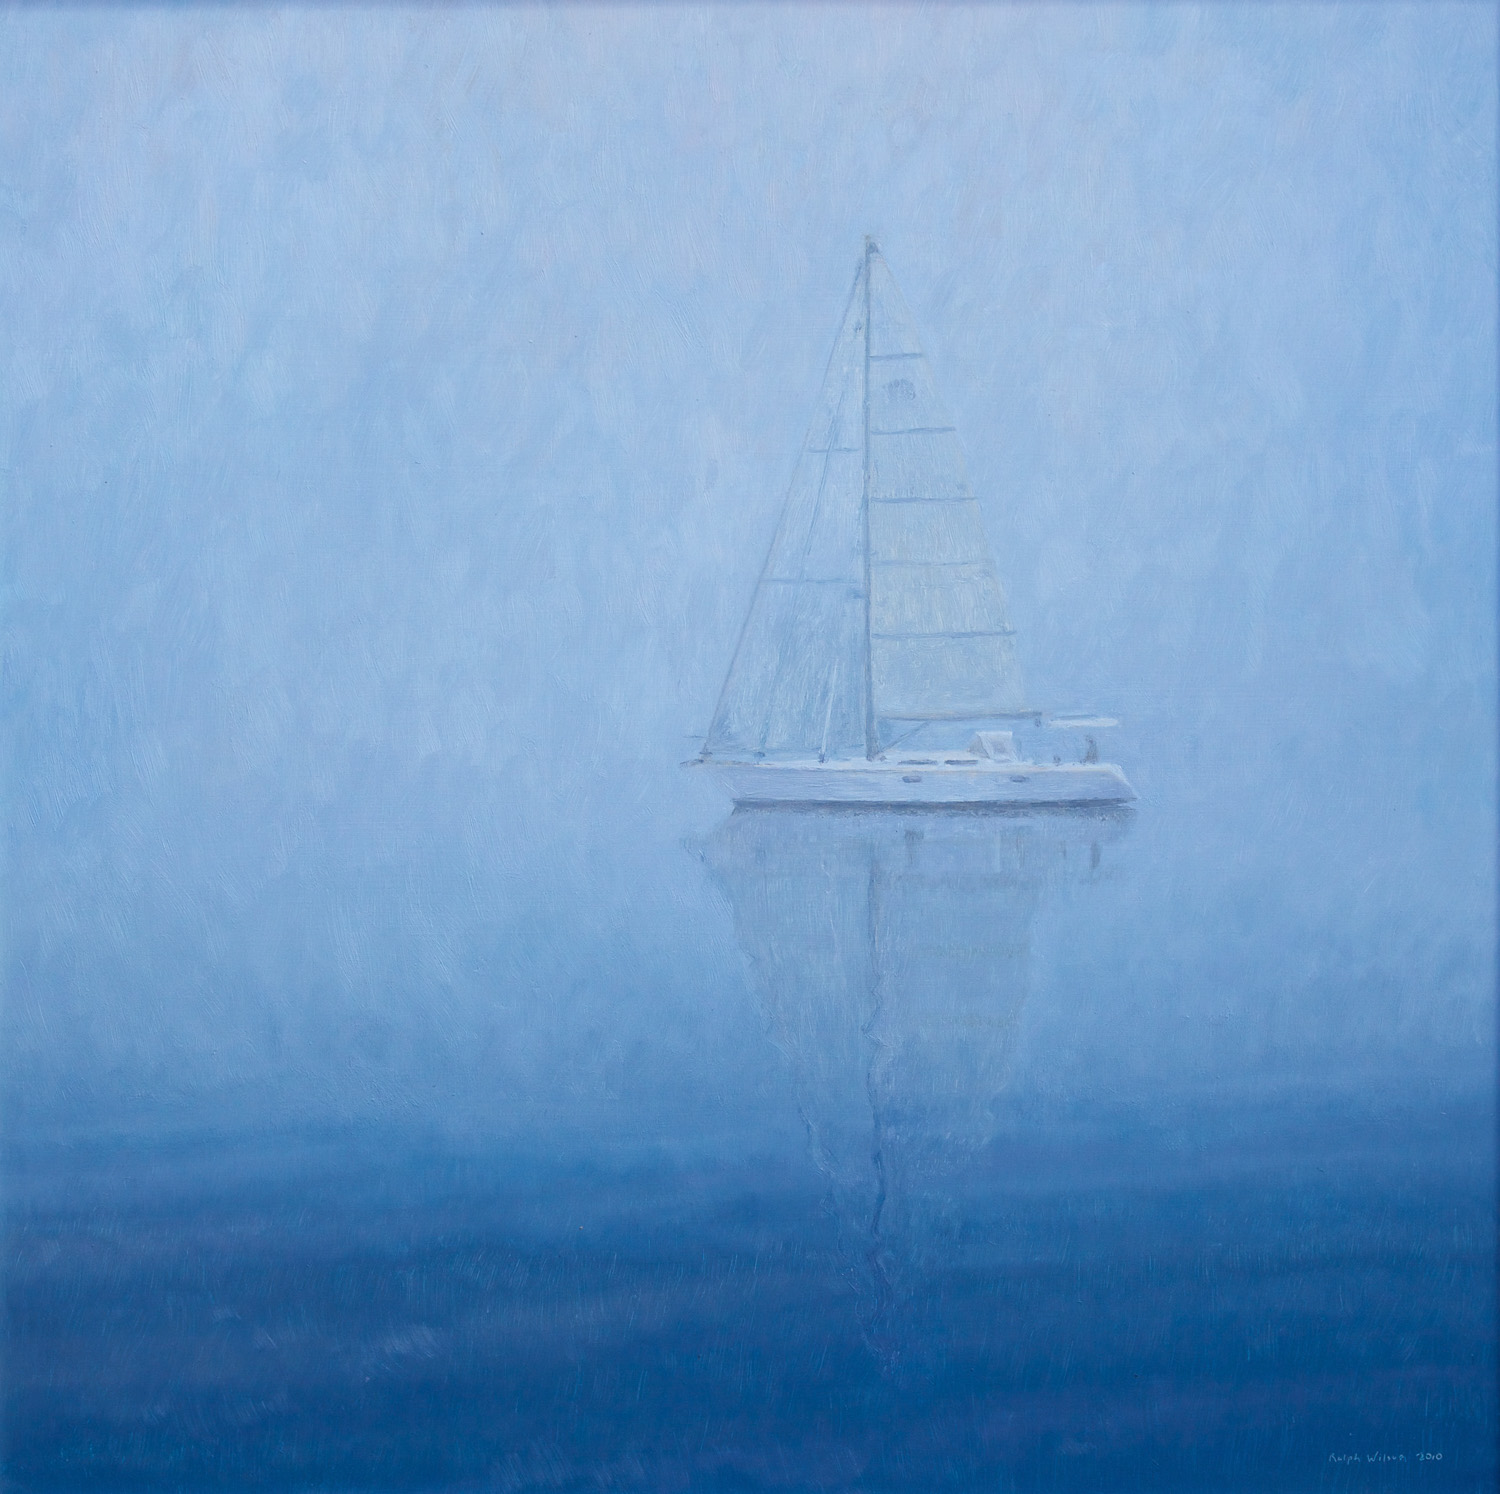 'Atelier' Adrift in the Mist 